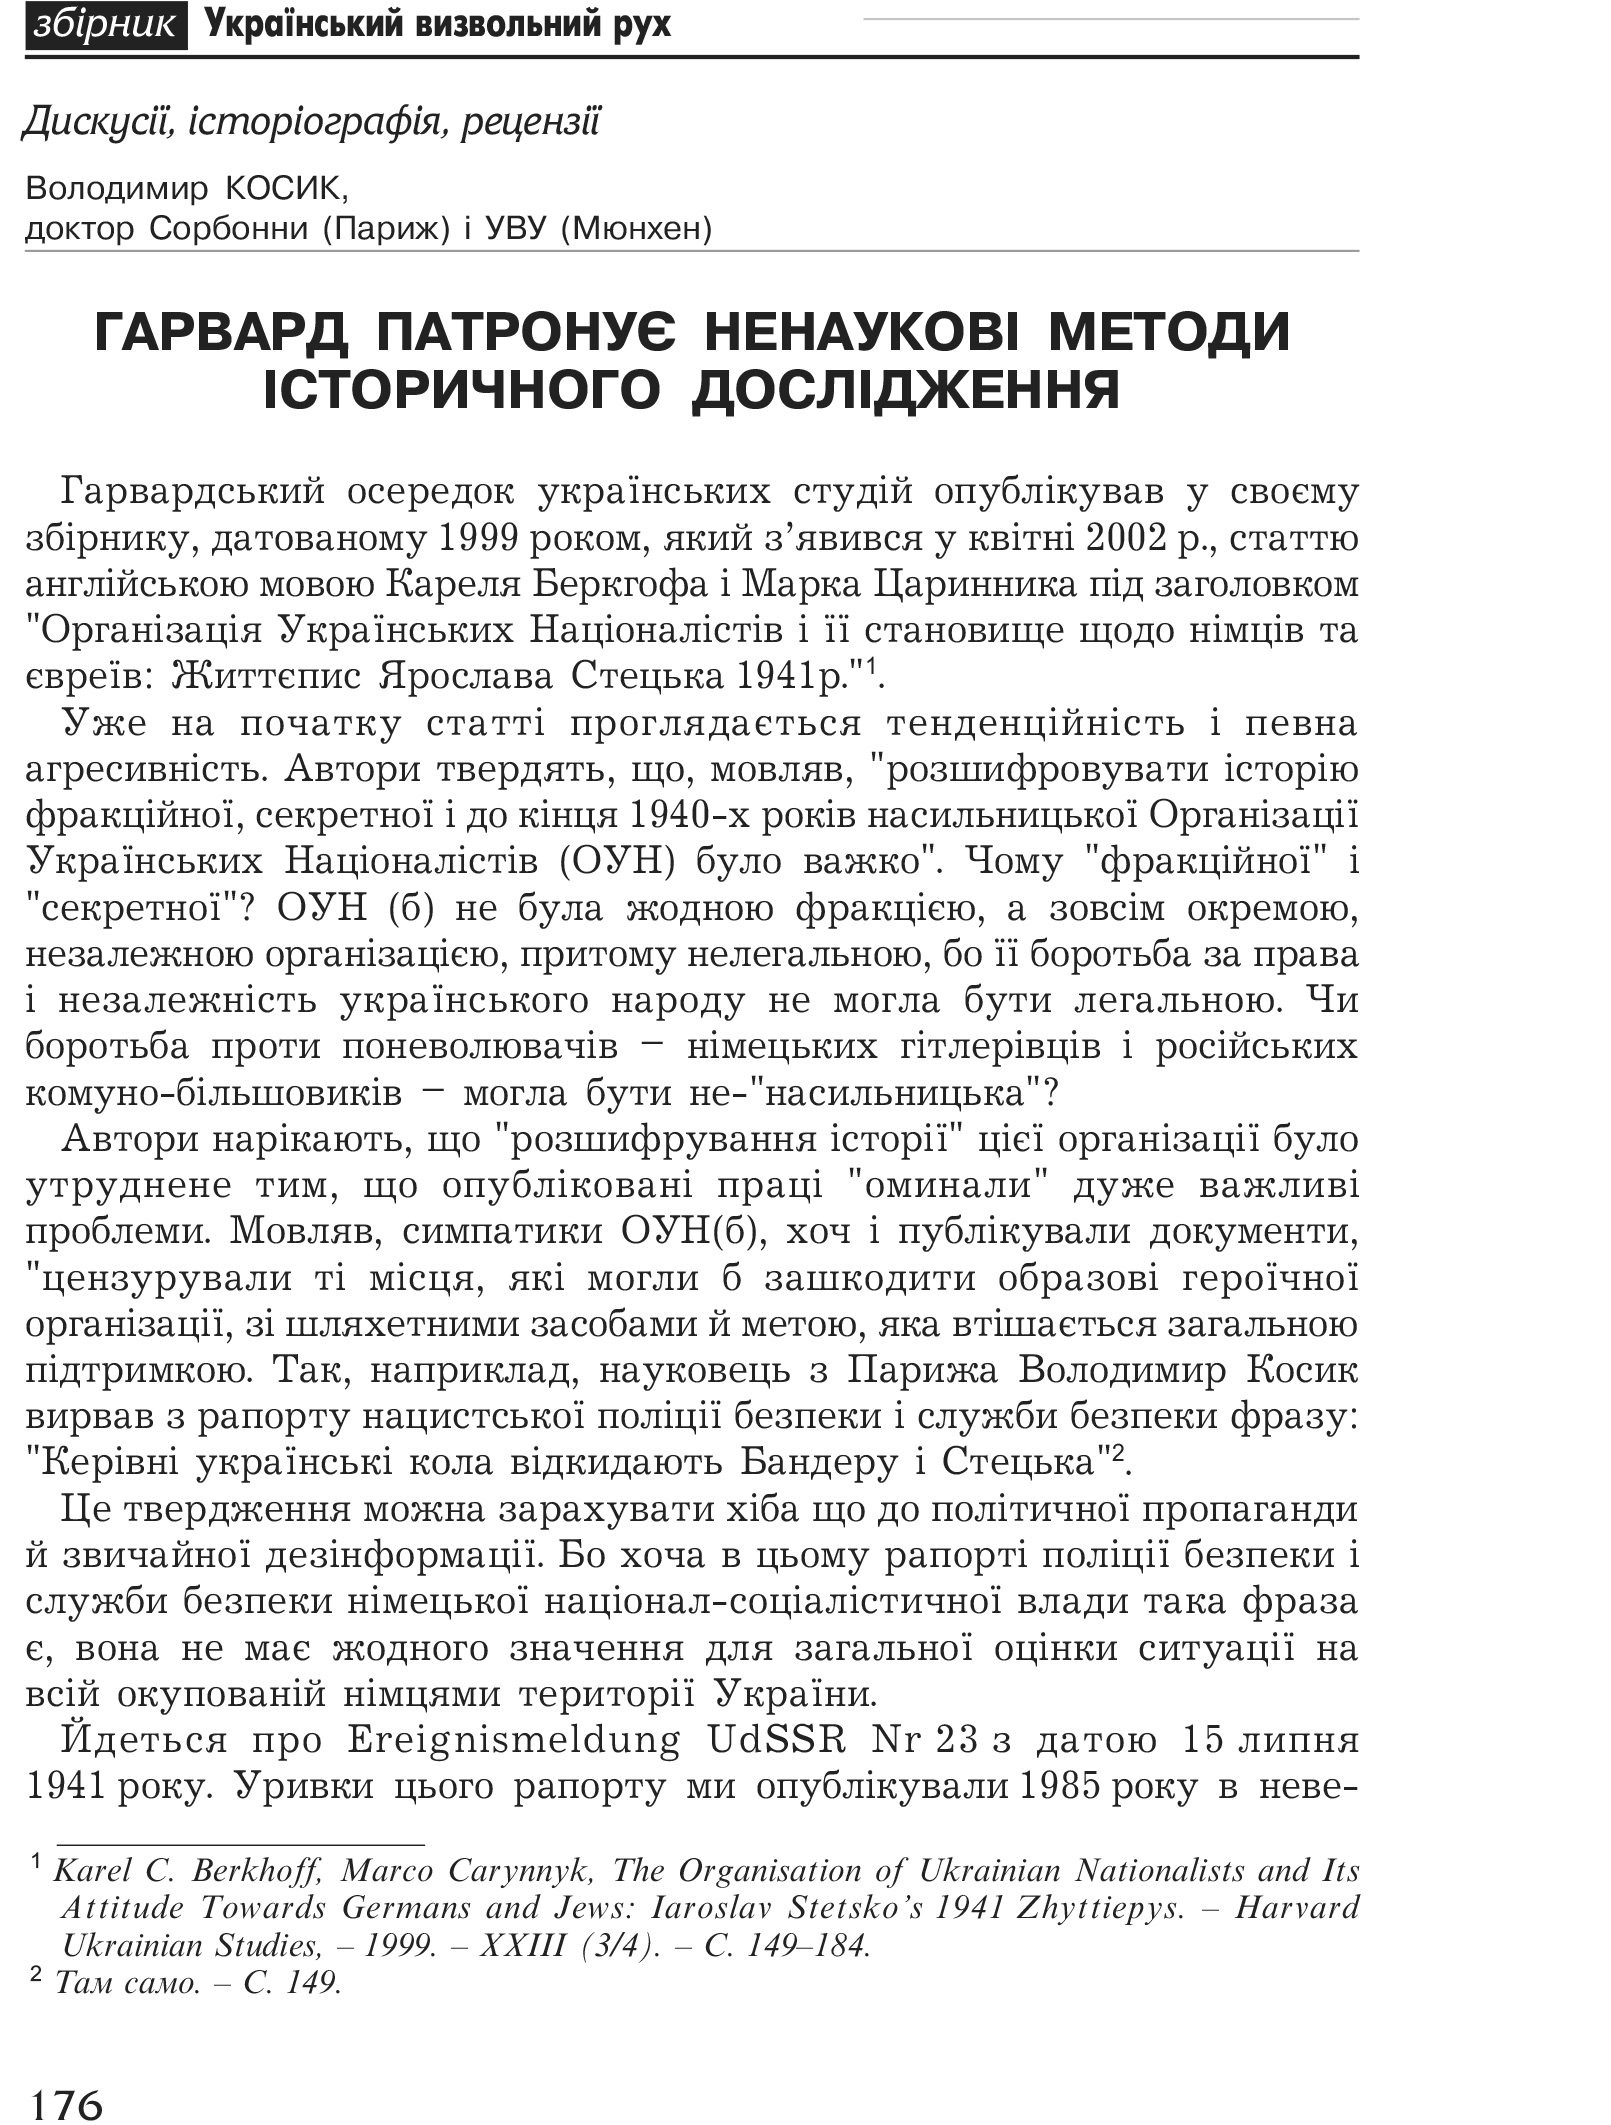 Український визвольний рух №1, ст. 176 - 189